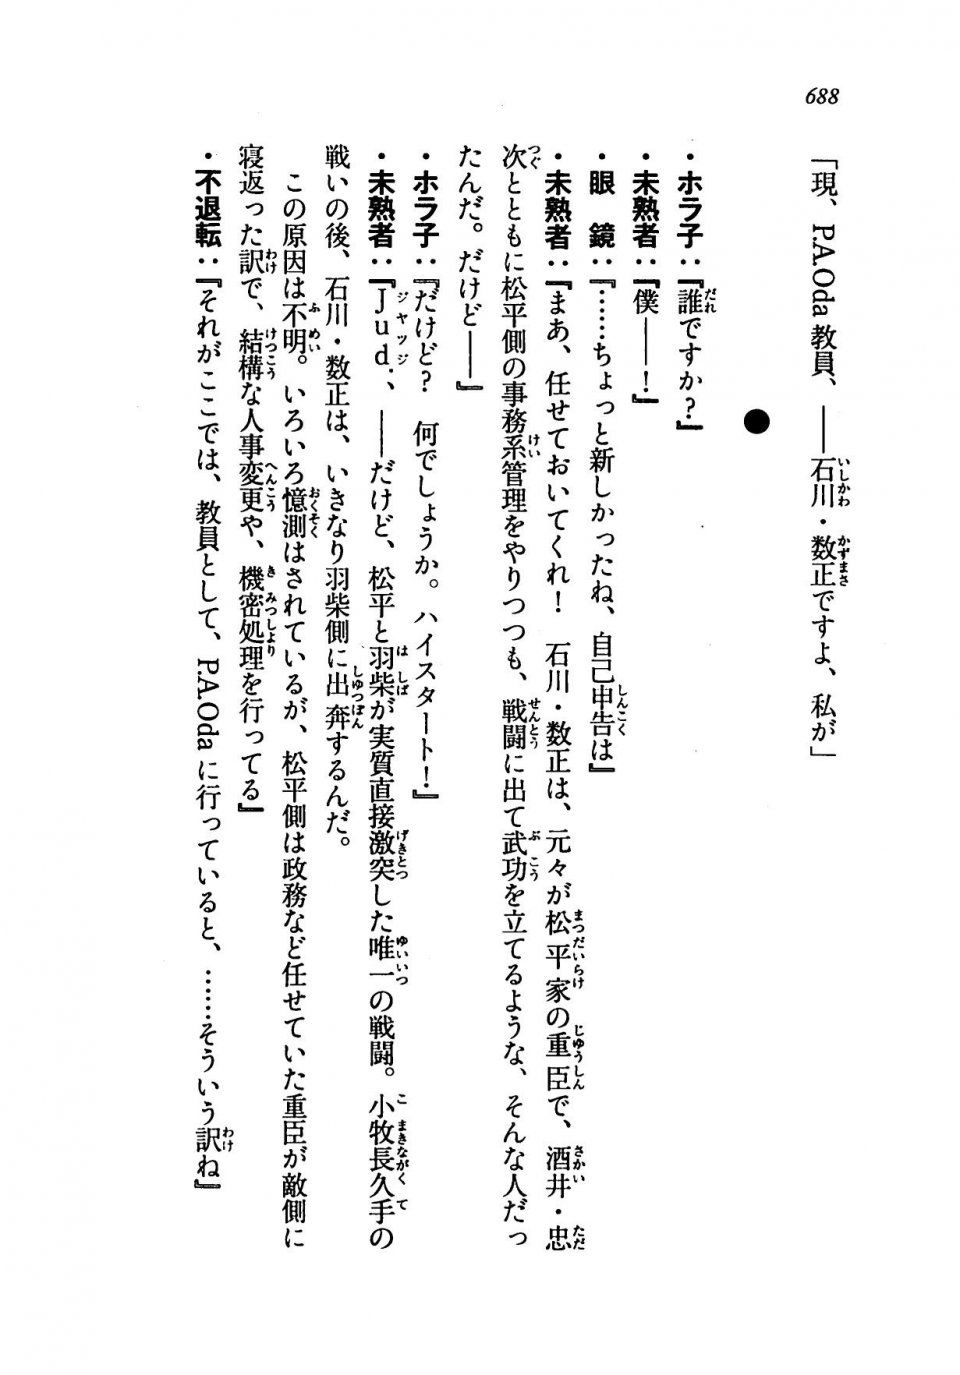 Kyoukai Senjou no Horizon LN Vol 19(8A) - Photo #688